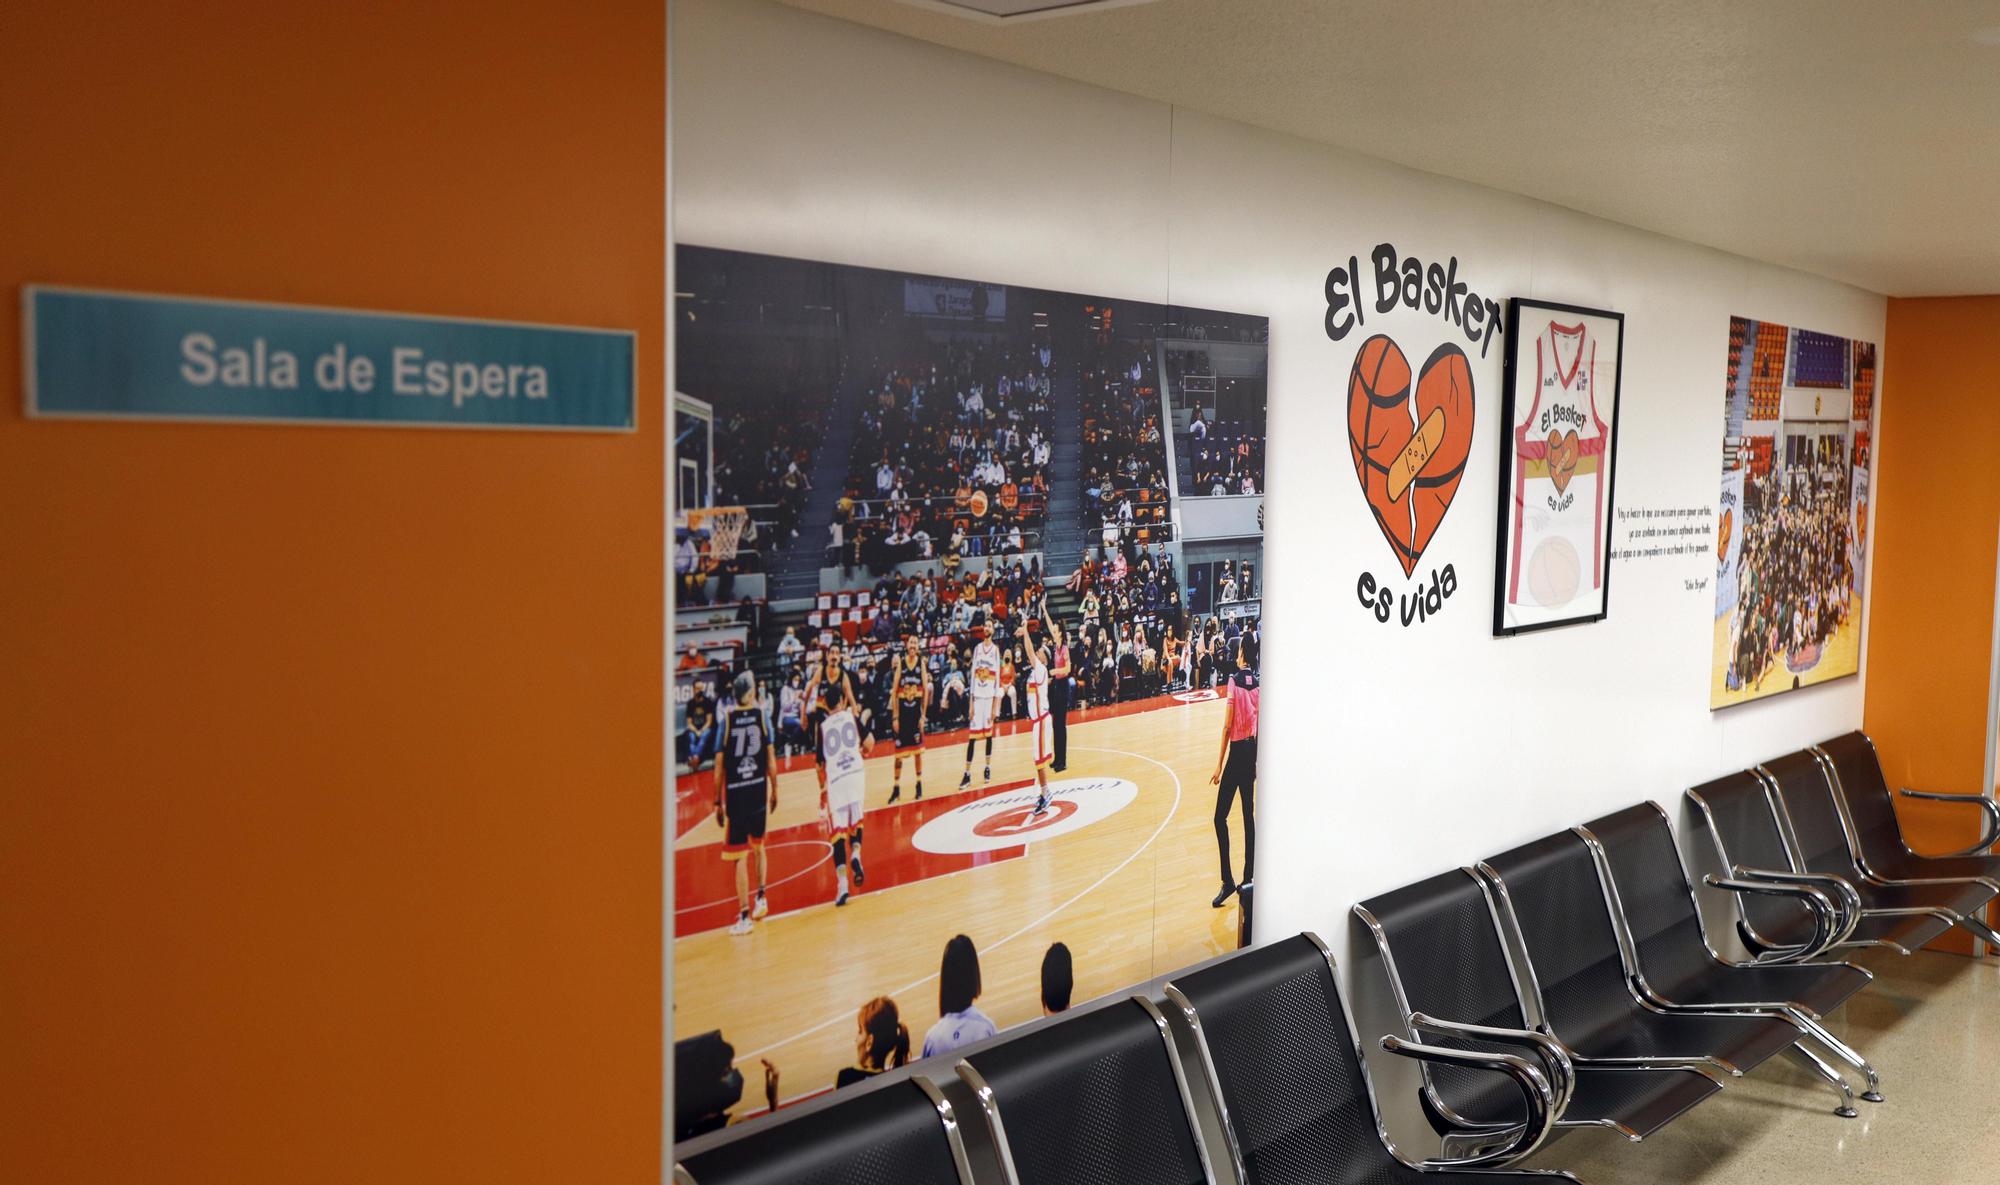 La nueva sala de espera del Hospital Materno Infantil tras la intervención de la asociación 'El Basket es vida'